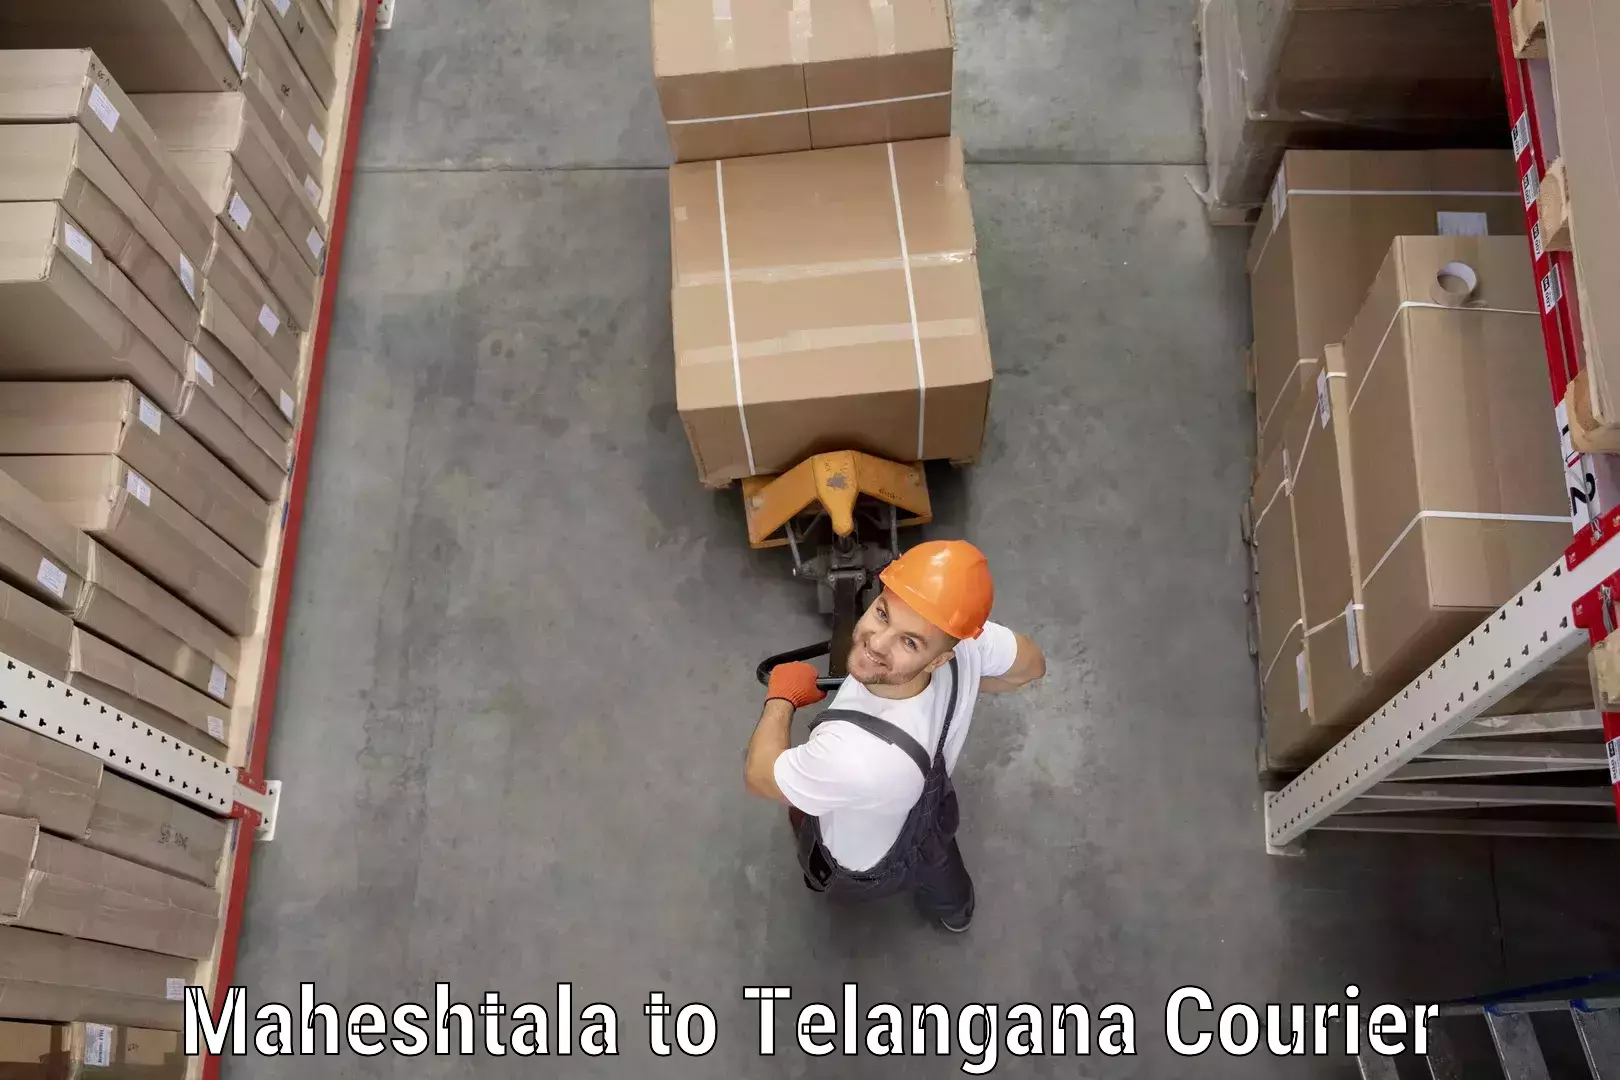 Modern courier technology Maheshtala to Eligedu